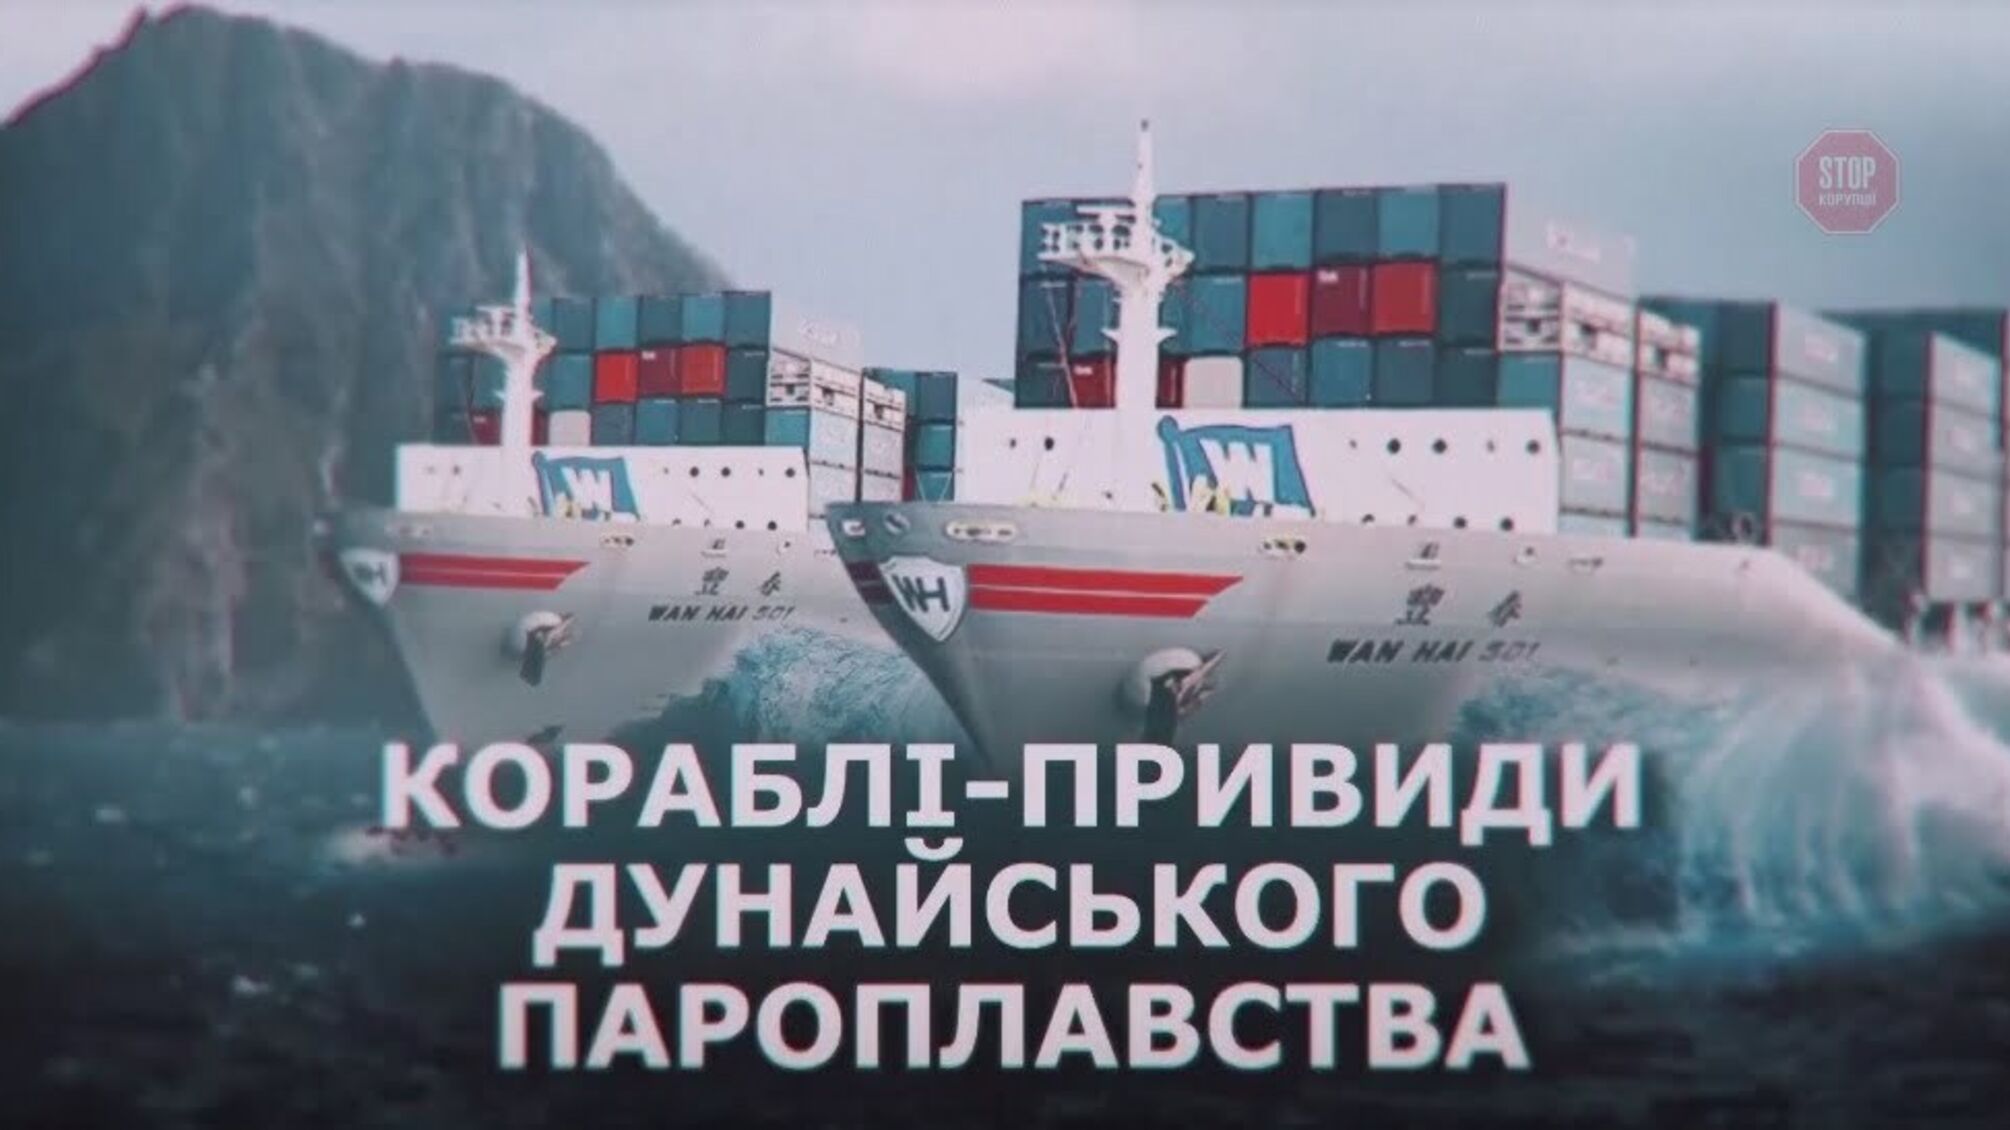 Примарний флот і керманичі-невидимки: що приховує Українське Дунайське пароплавство